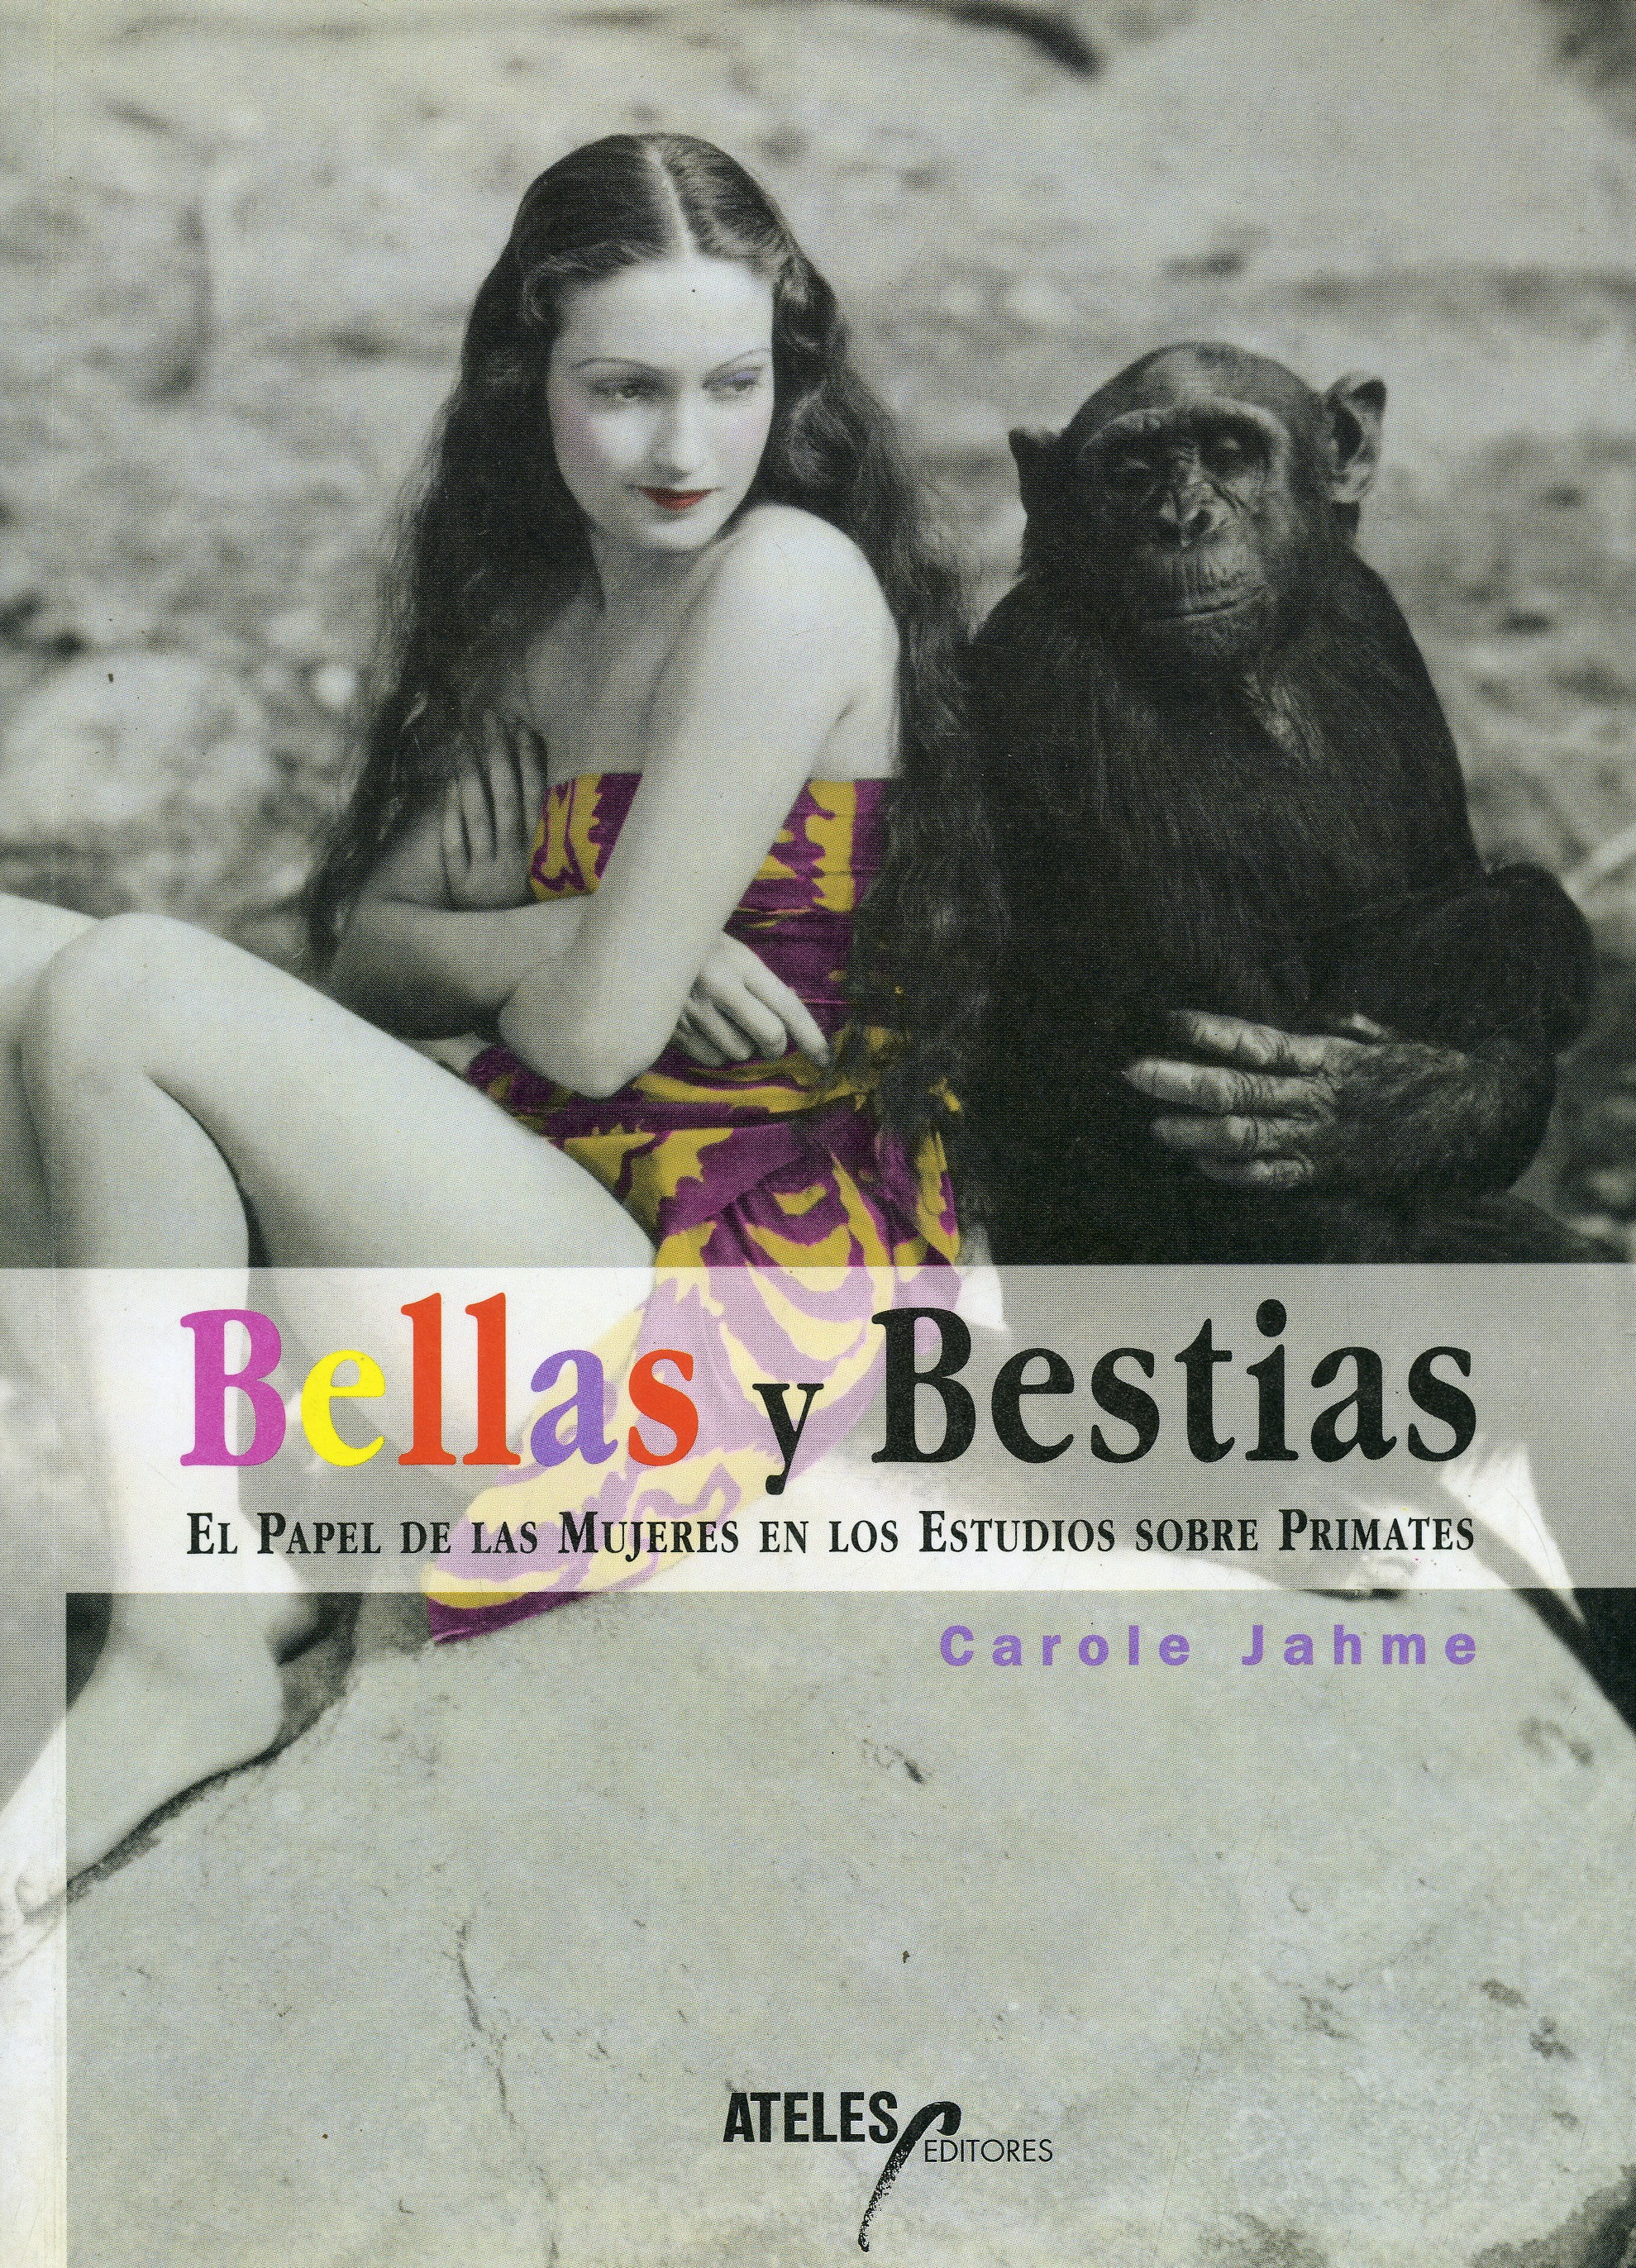 Bellas y Bestias. El papel de las mujeres en los estudios sobre primates